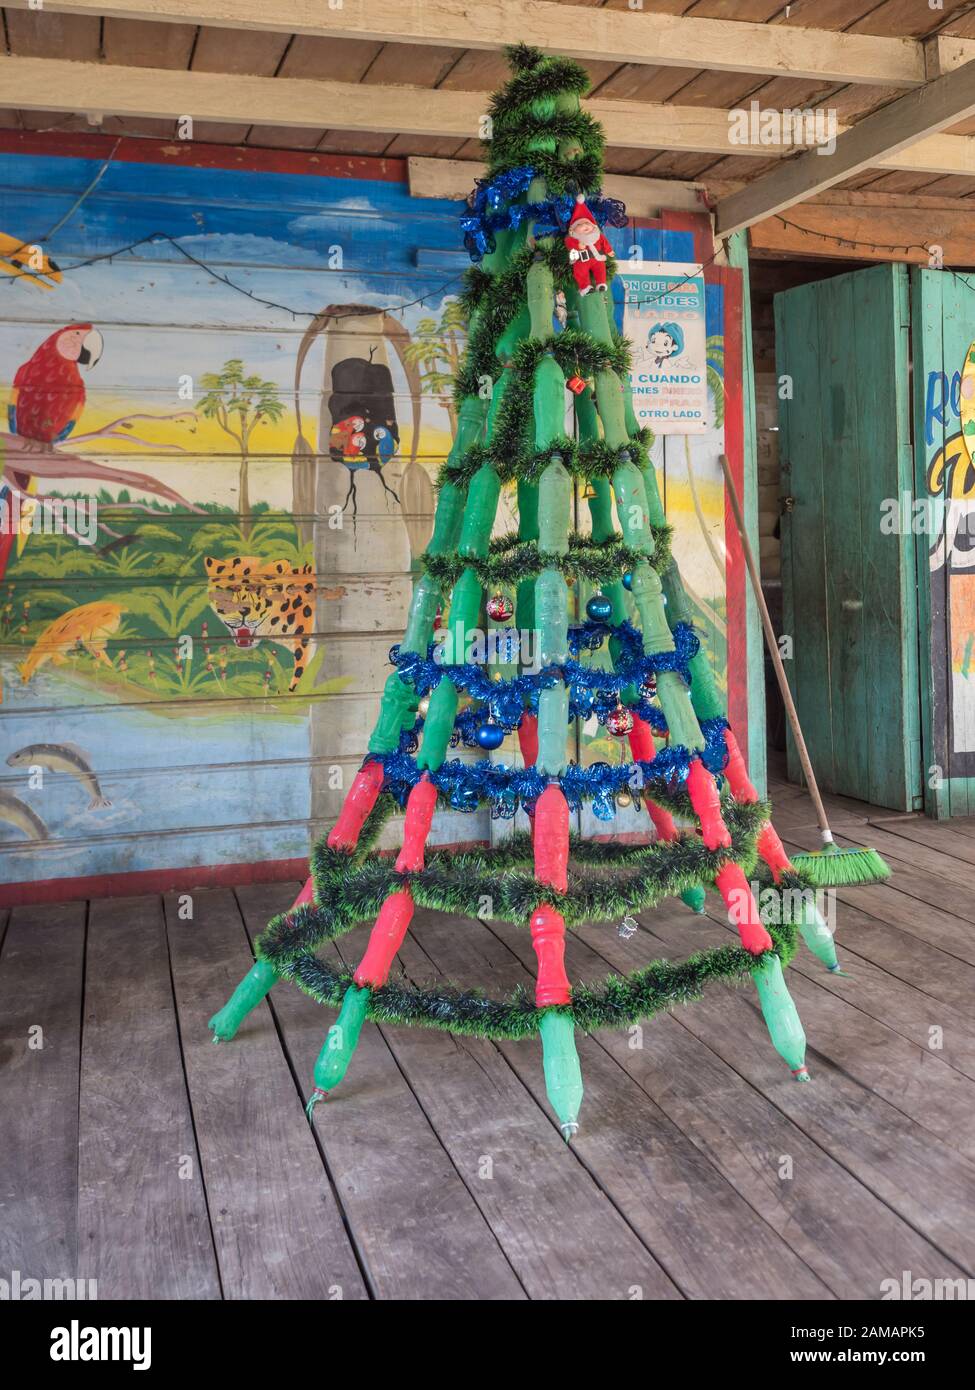 Santa Rosa, Peru - Dezember 10, 2017: ein Weihnachtsbaum aus dem grünen Flaschen warten auf Weihnachten in Santa Rosa, Peru, Südamerika. Stockfoto